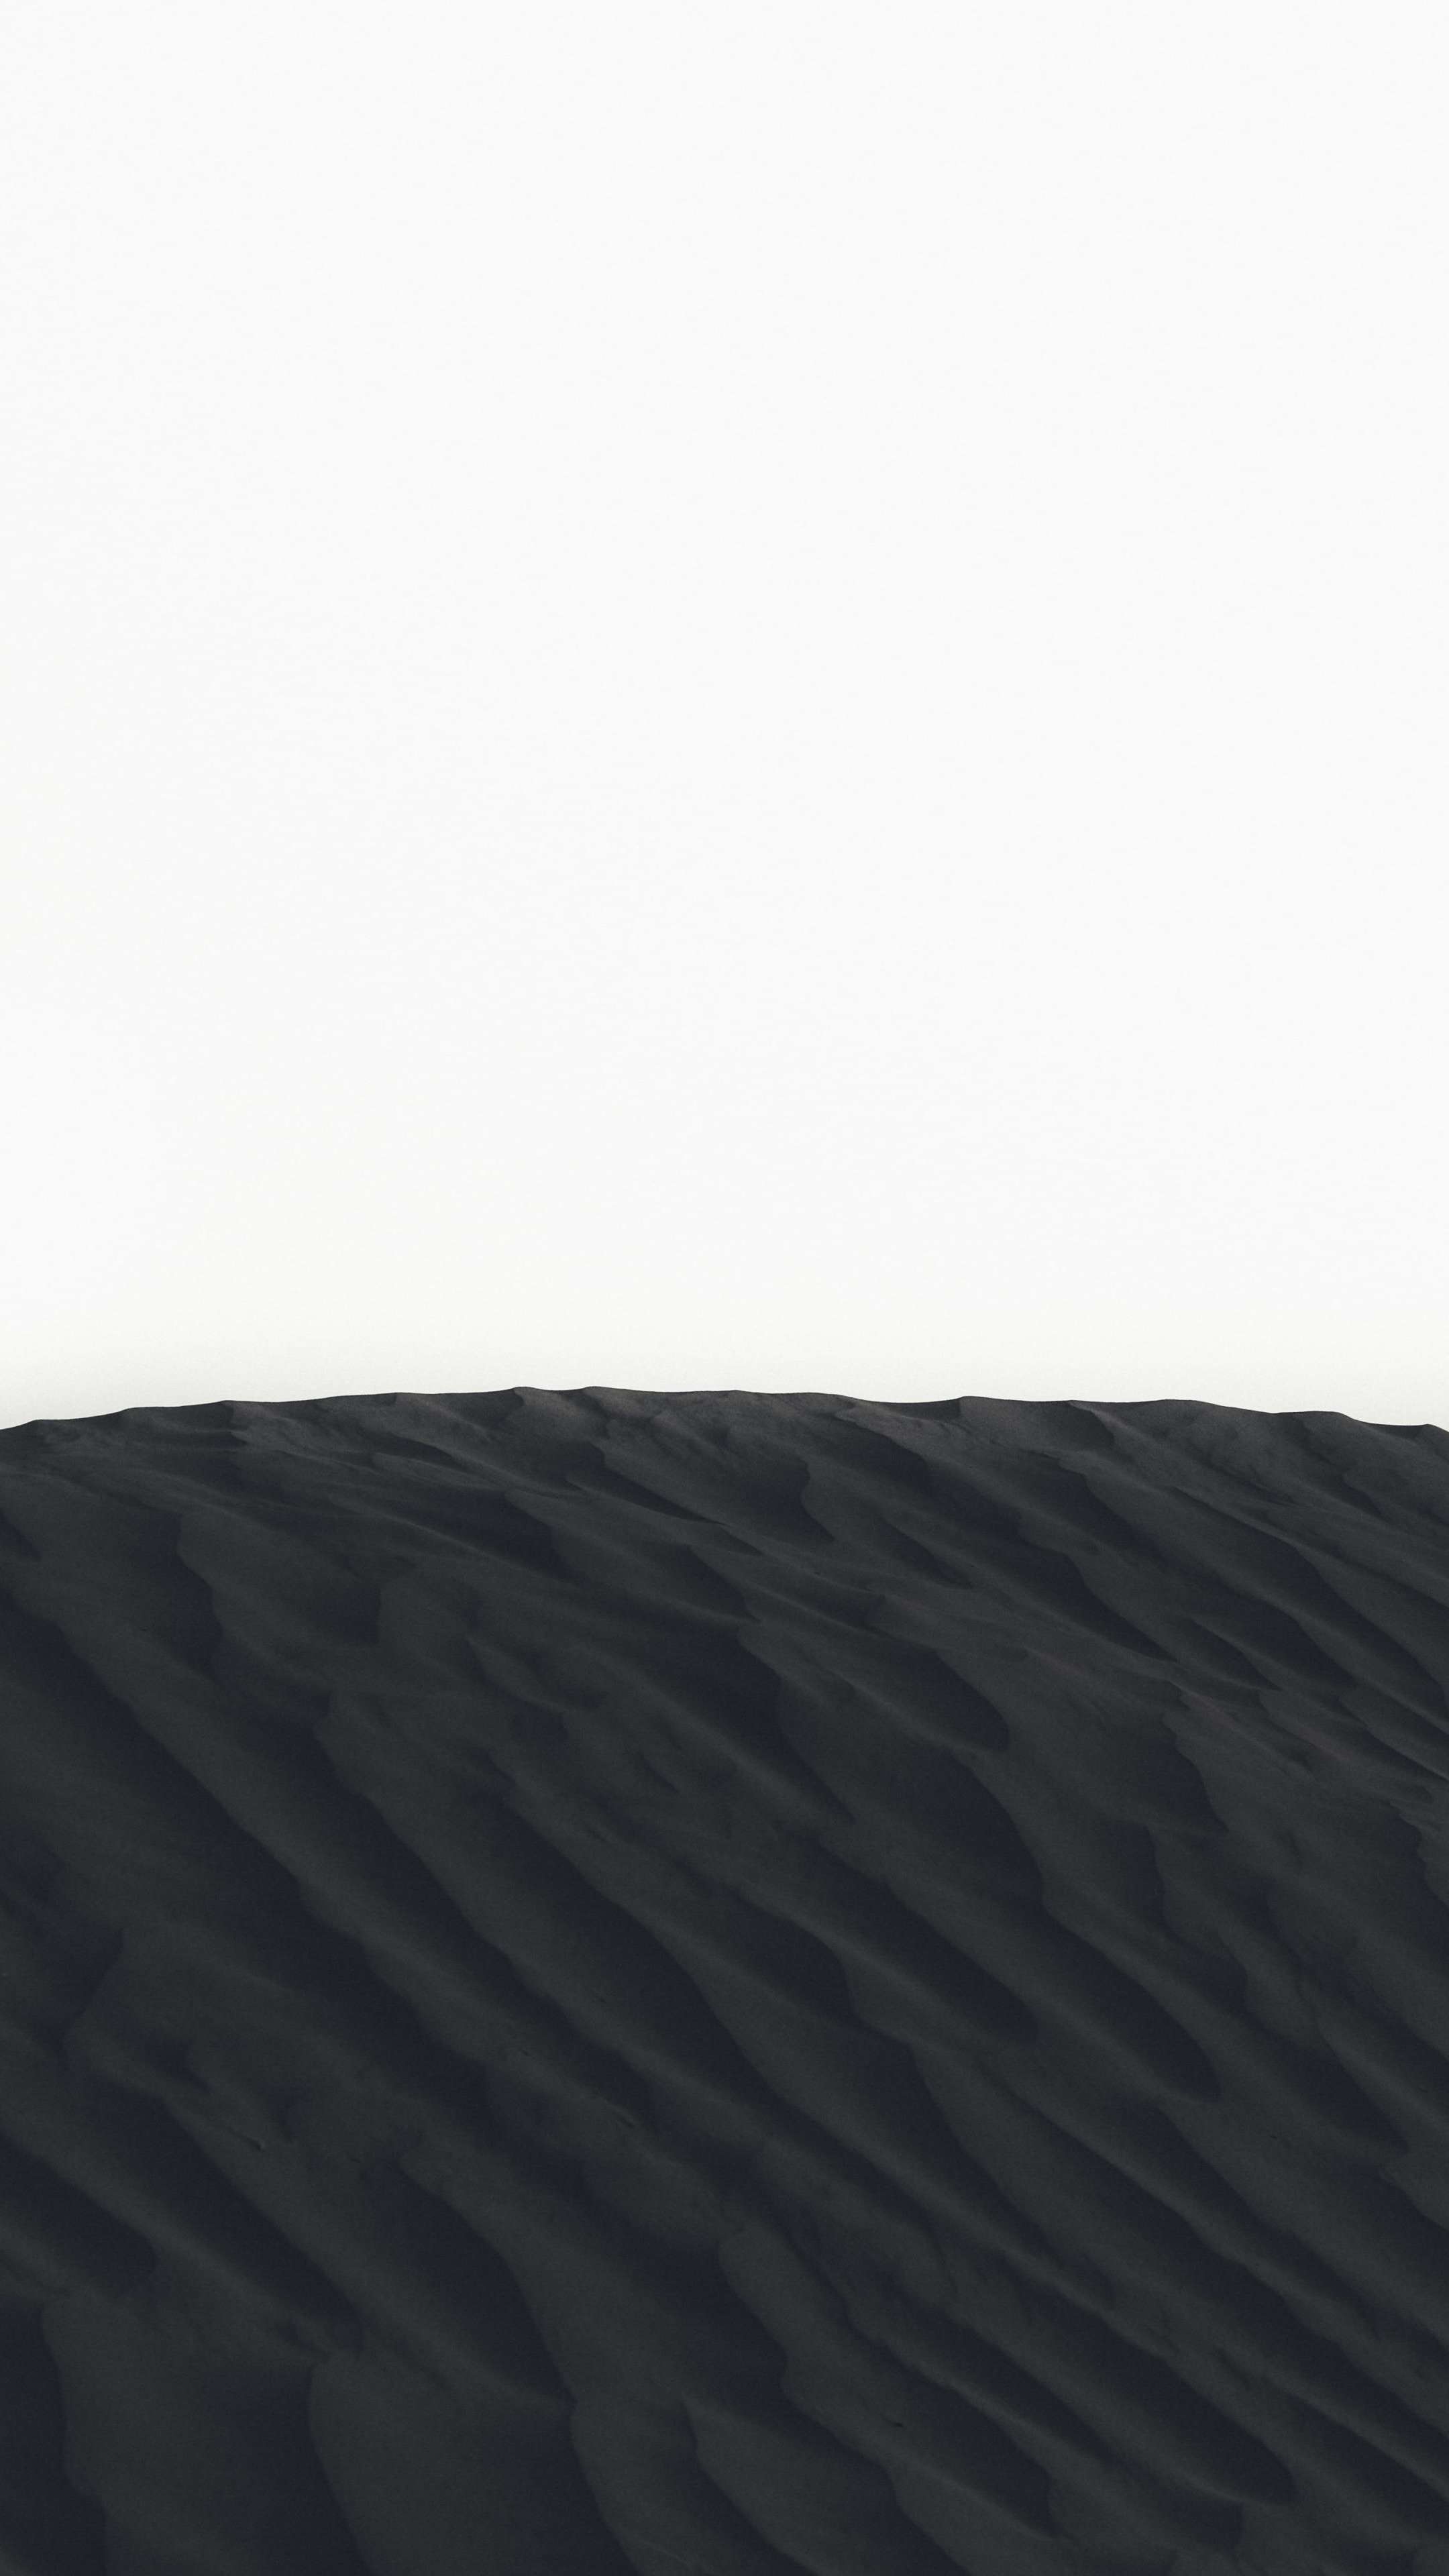 Black Sand White Background 4K Phone Wallpaper